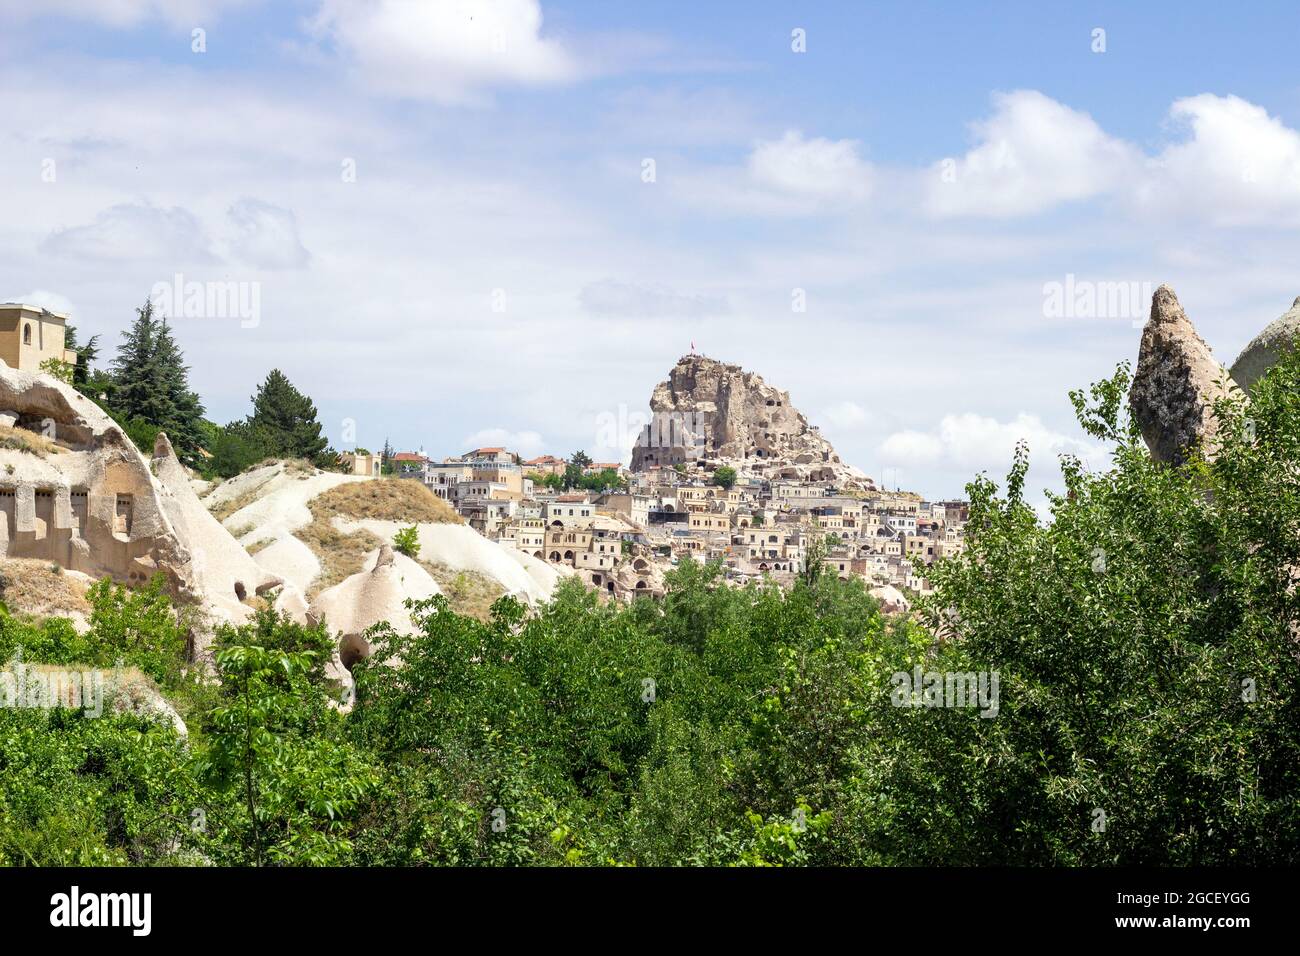 La célèbre photo du château d'Uçhisar. Incroyable château grotte. L'incroyable château de cheminée de fées. Banque D'Images